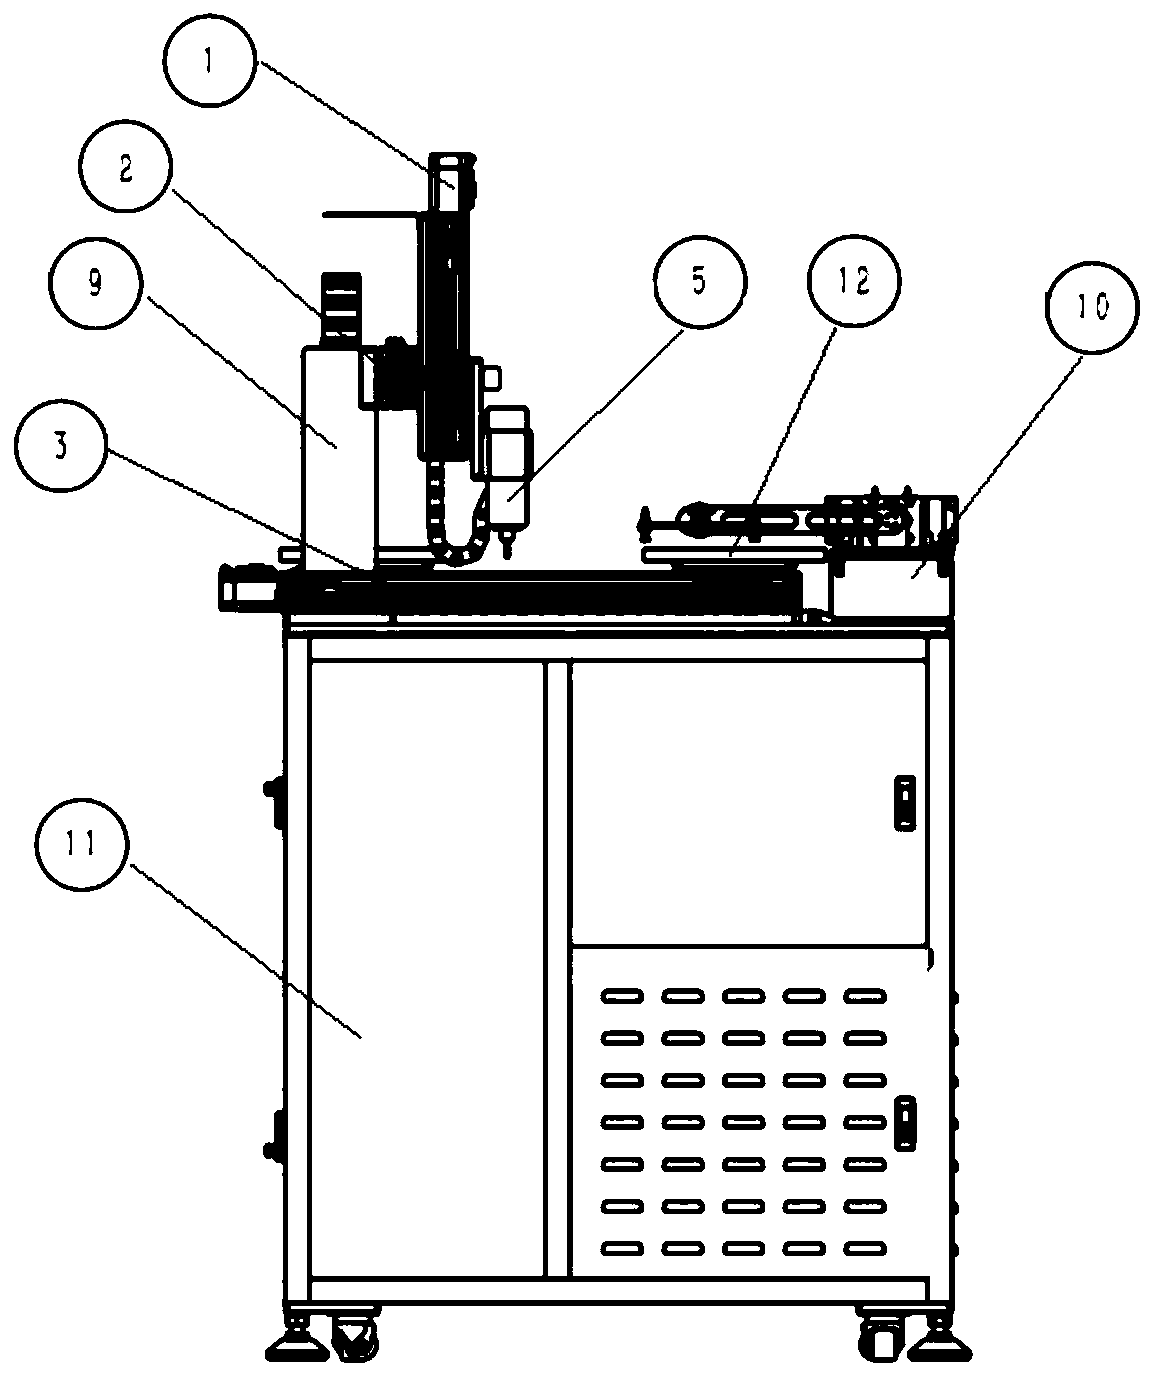 Plastic part milling machine